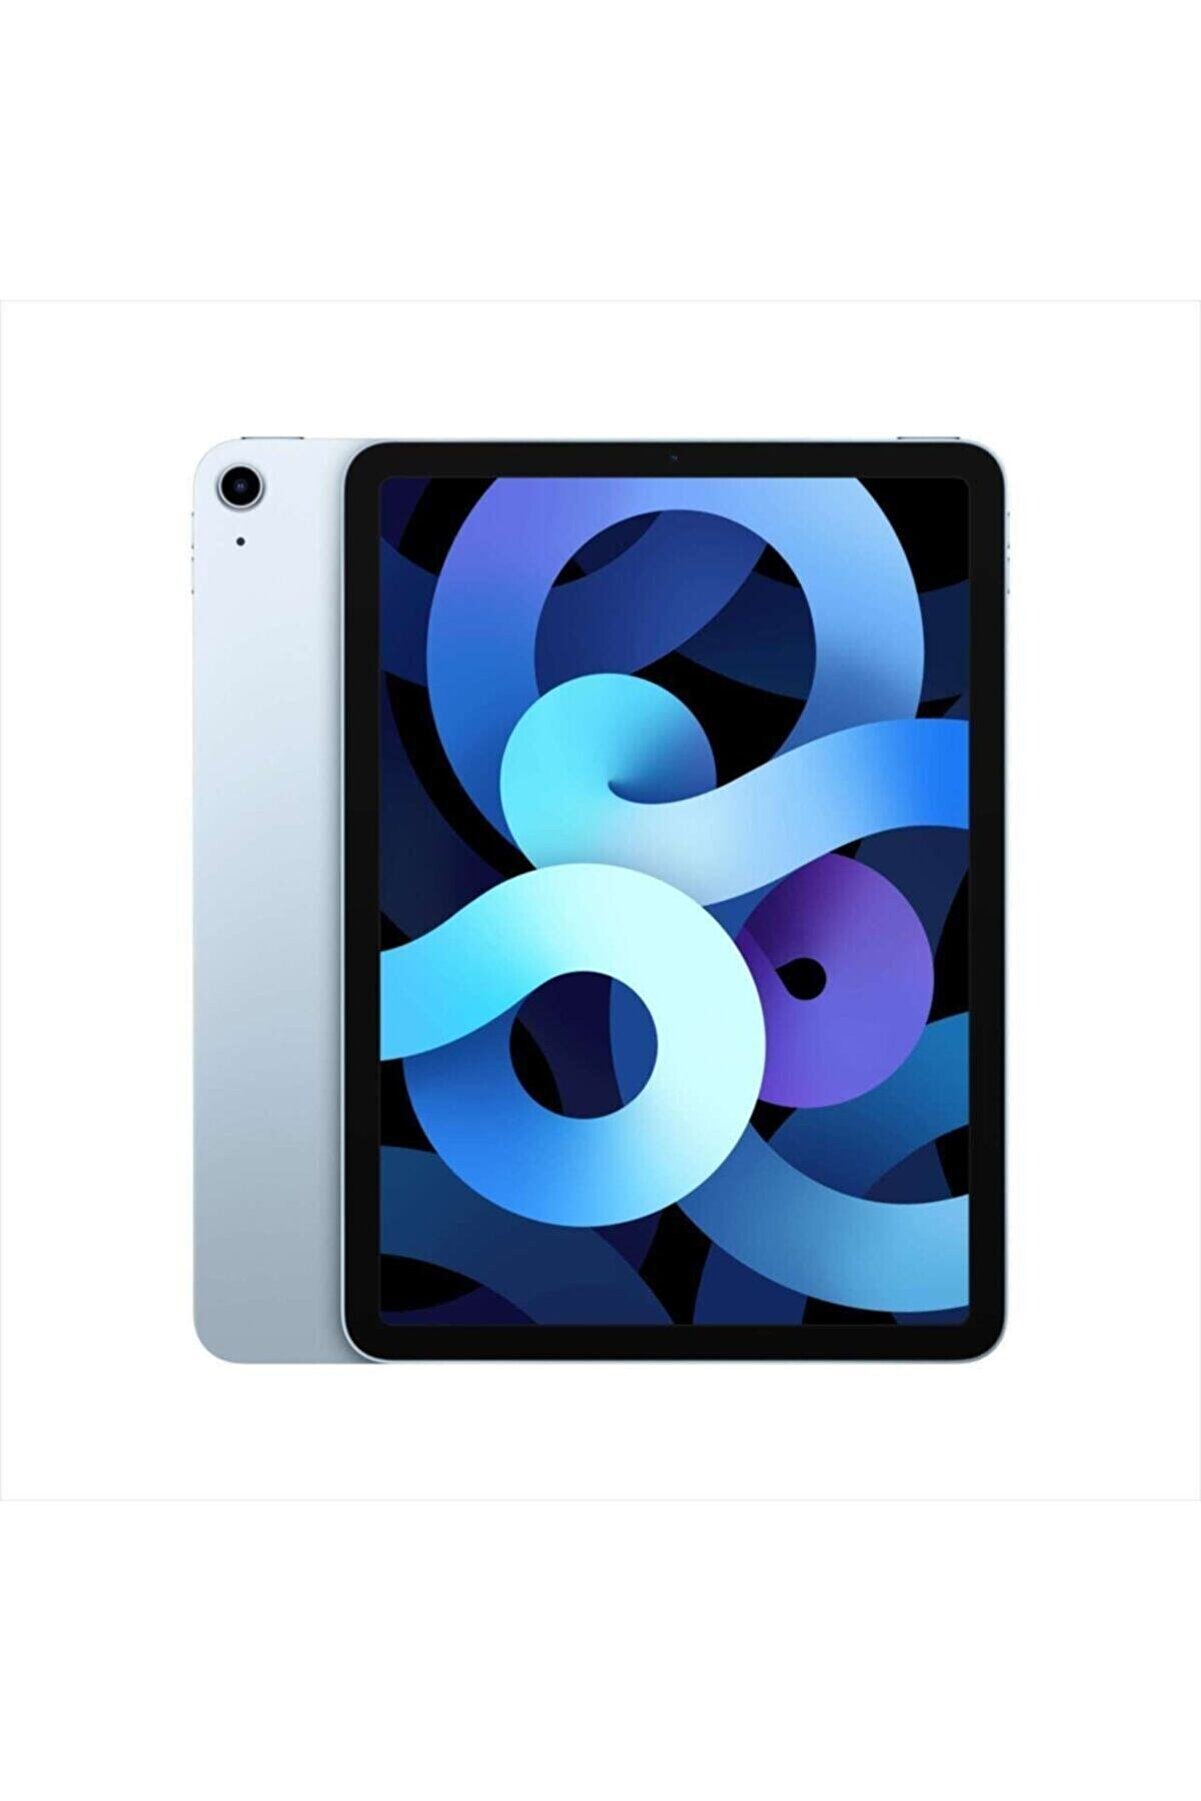 Apple iPad Air 10.9 Inç Wi-Fİ 64GB Gök Mavisi - Myfq2tu/a